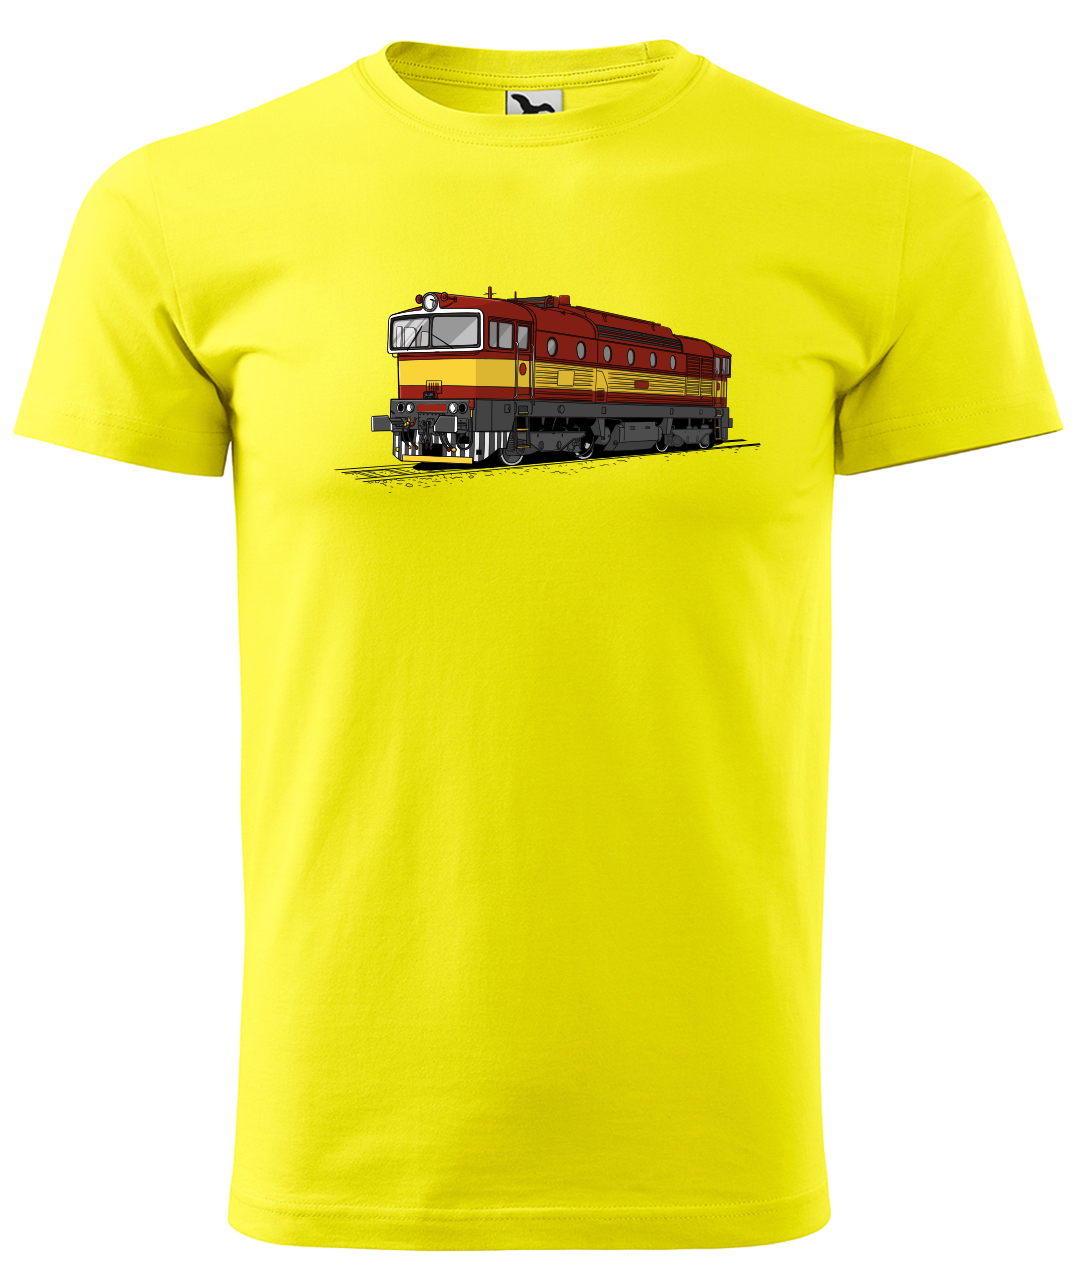 Dětské tričko s vlakem - Barevná lokomotiva BREJLOVEC Velikost: 4 roky / 110 cm, Barva: Žlutá (04)